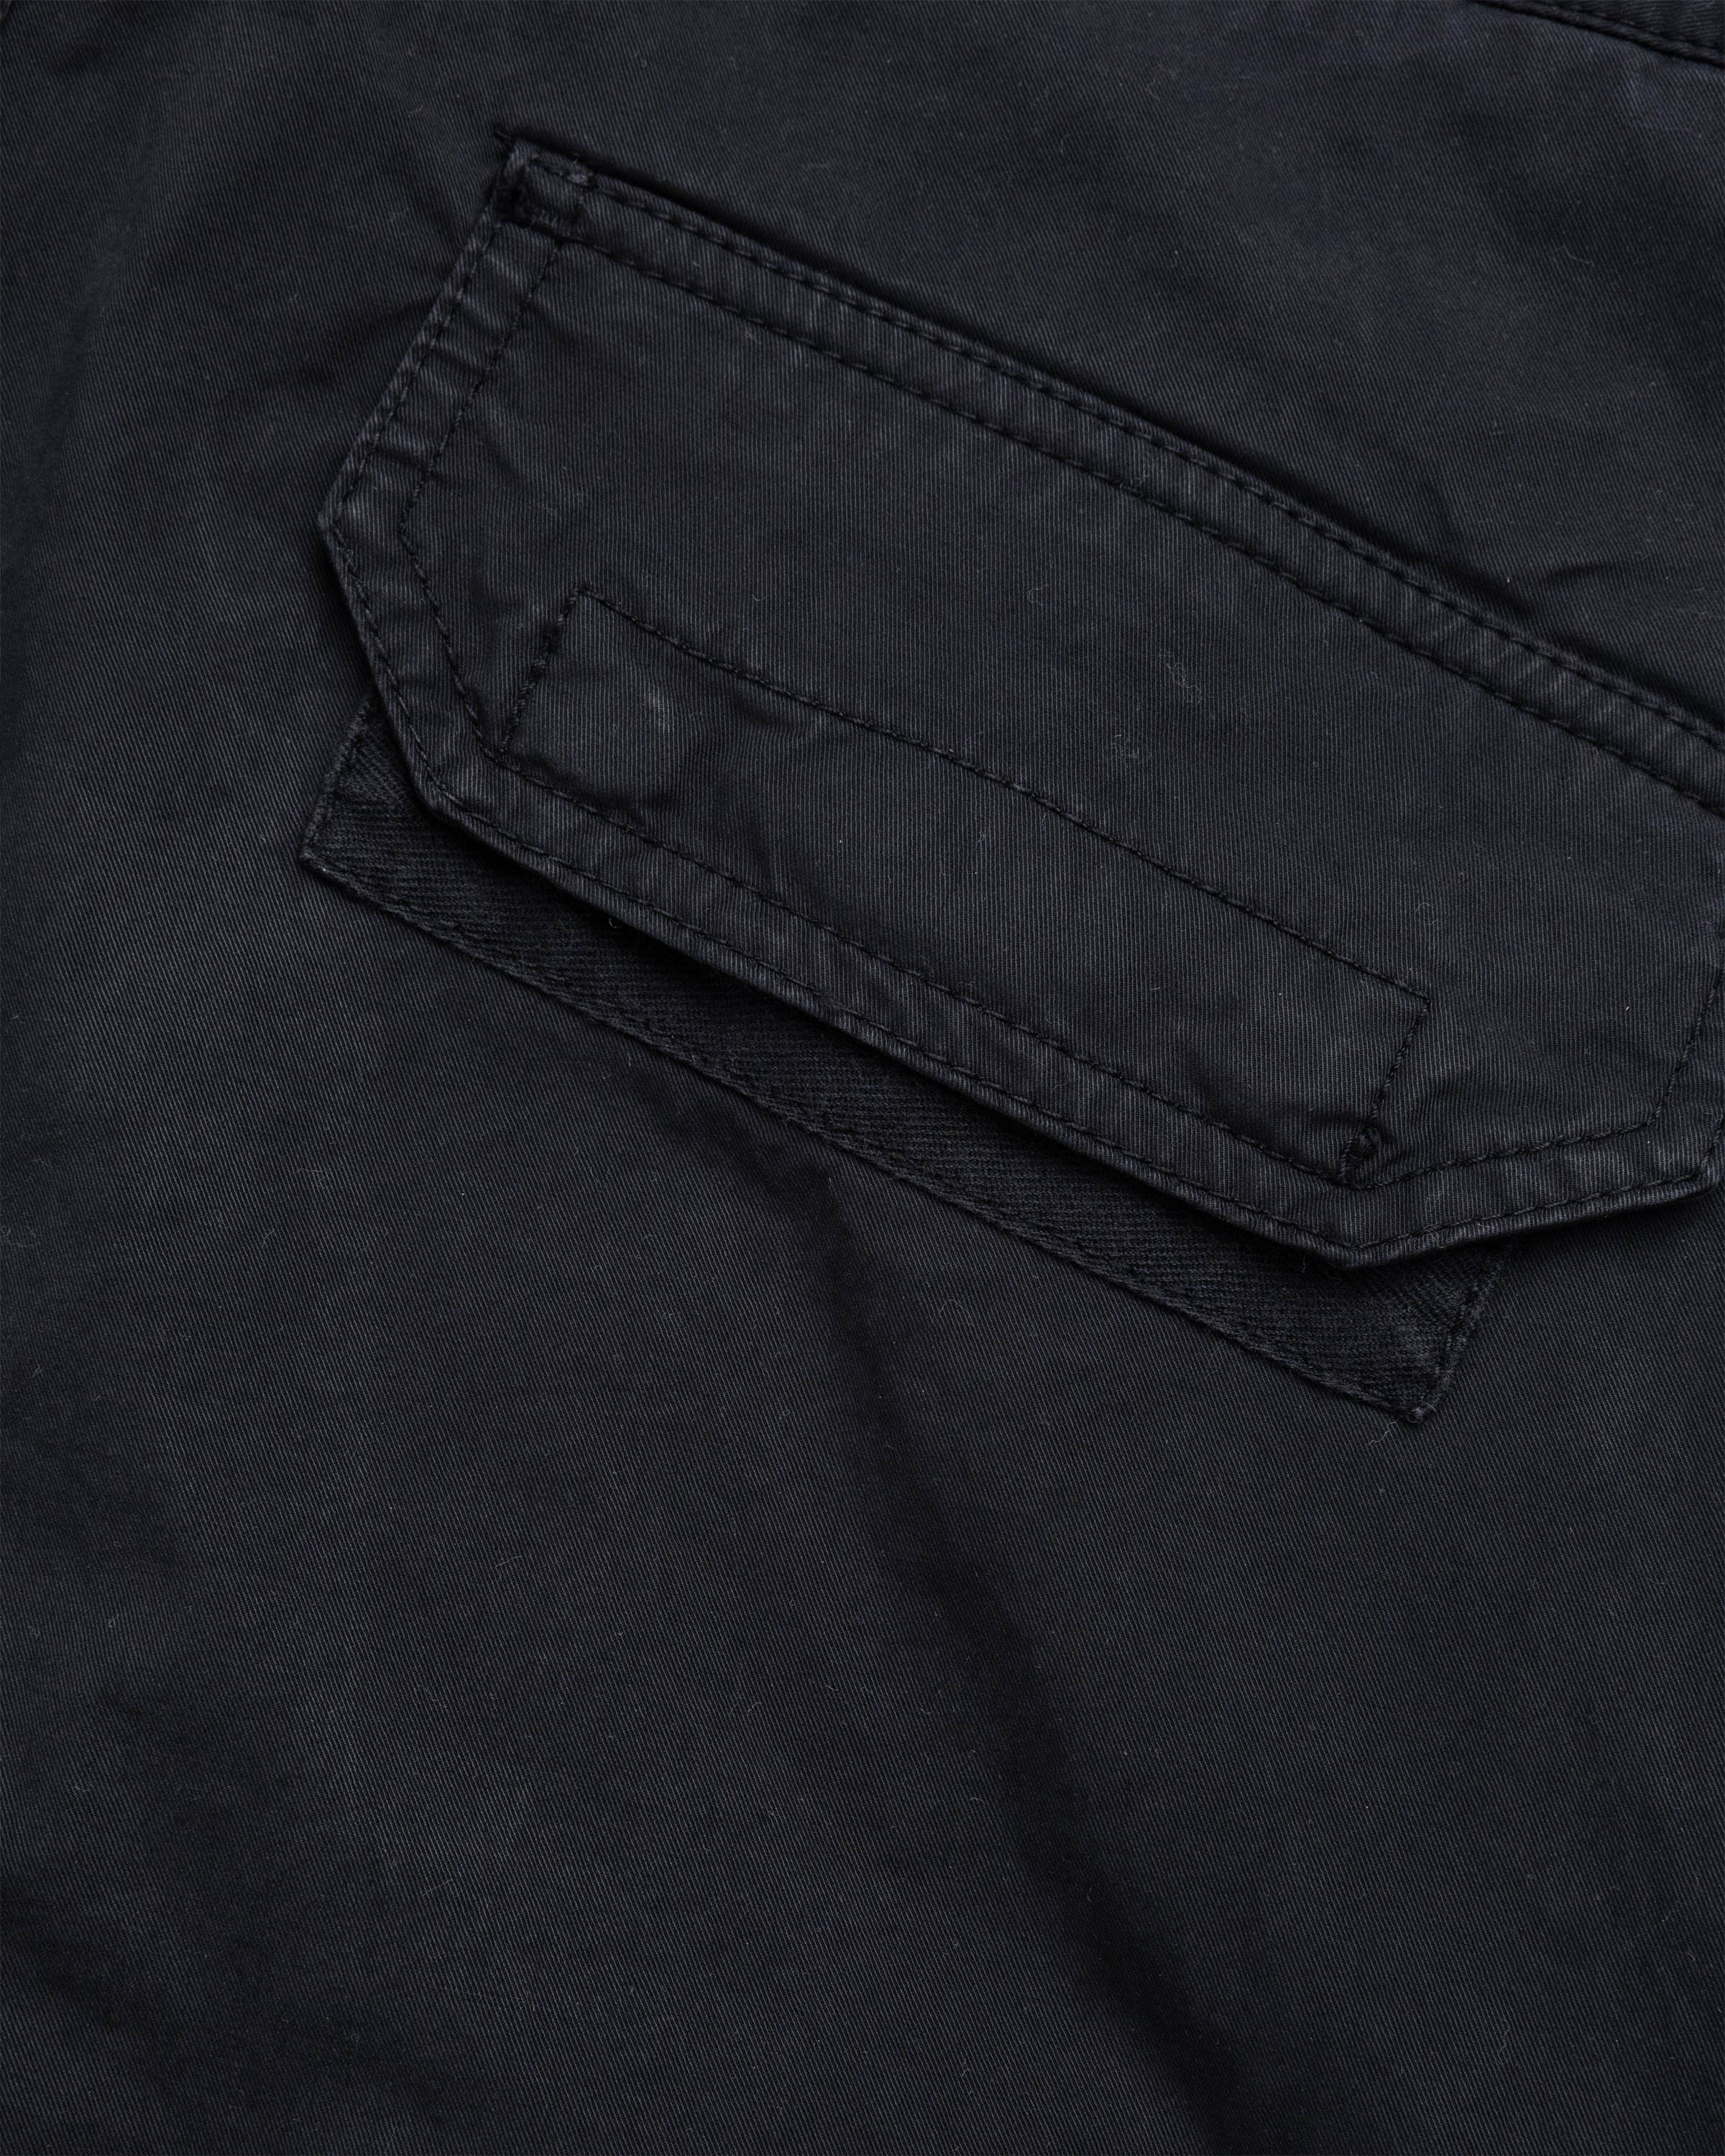 Stone Island - Stretch Cotton Gabardine Cargo Pants Black - Clothing - Black - Image 6